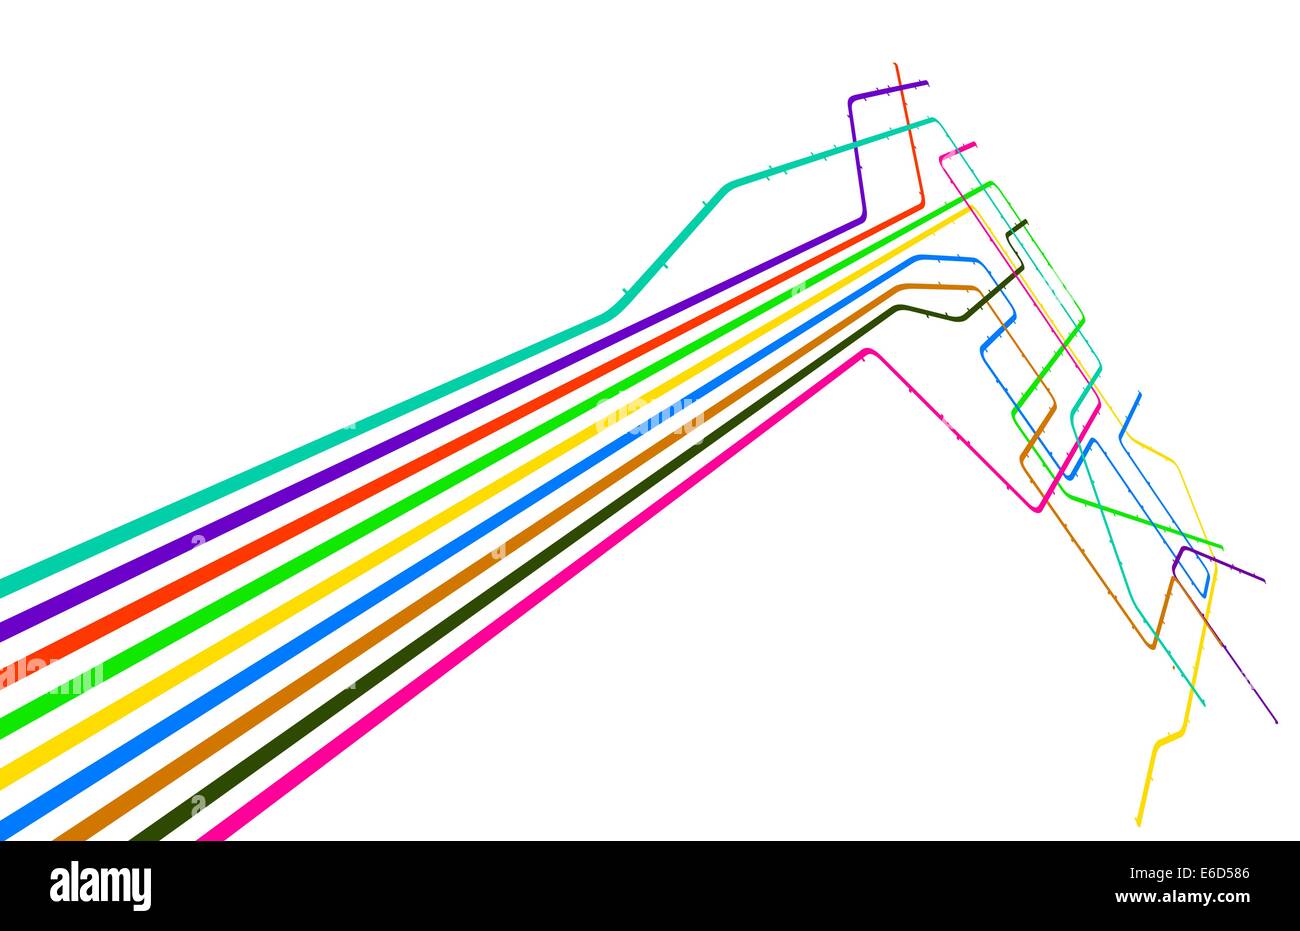 Vecteur modifiable conception d'un système de métro générique with copy space Illustration de Vecteur